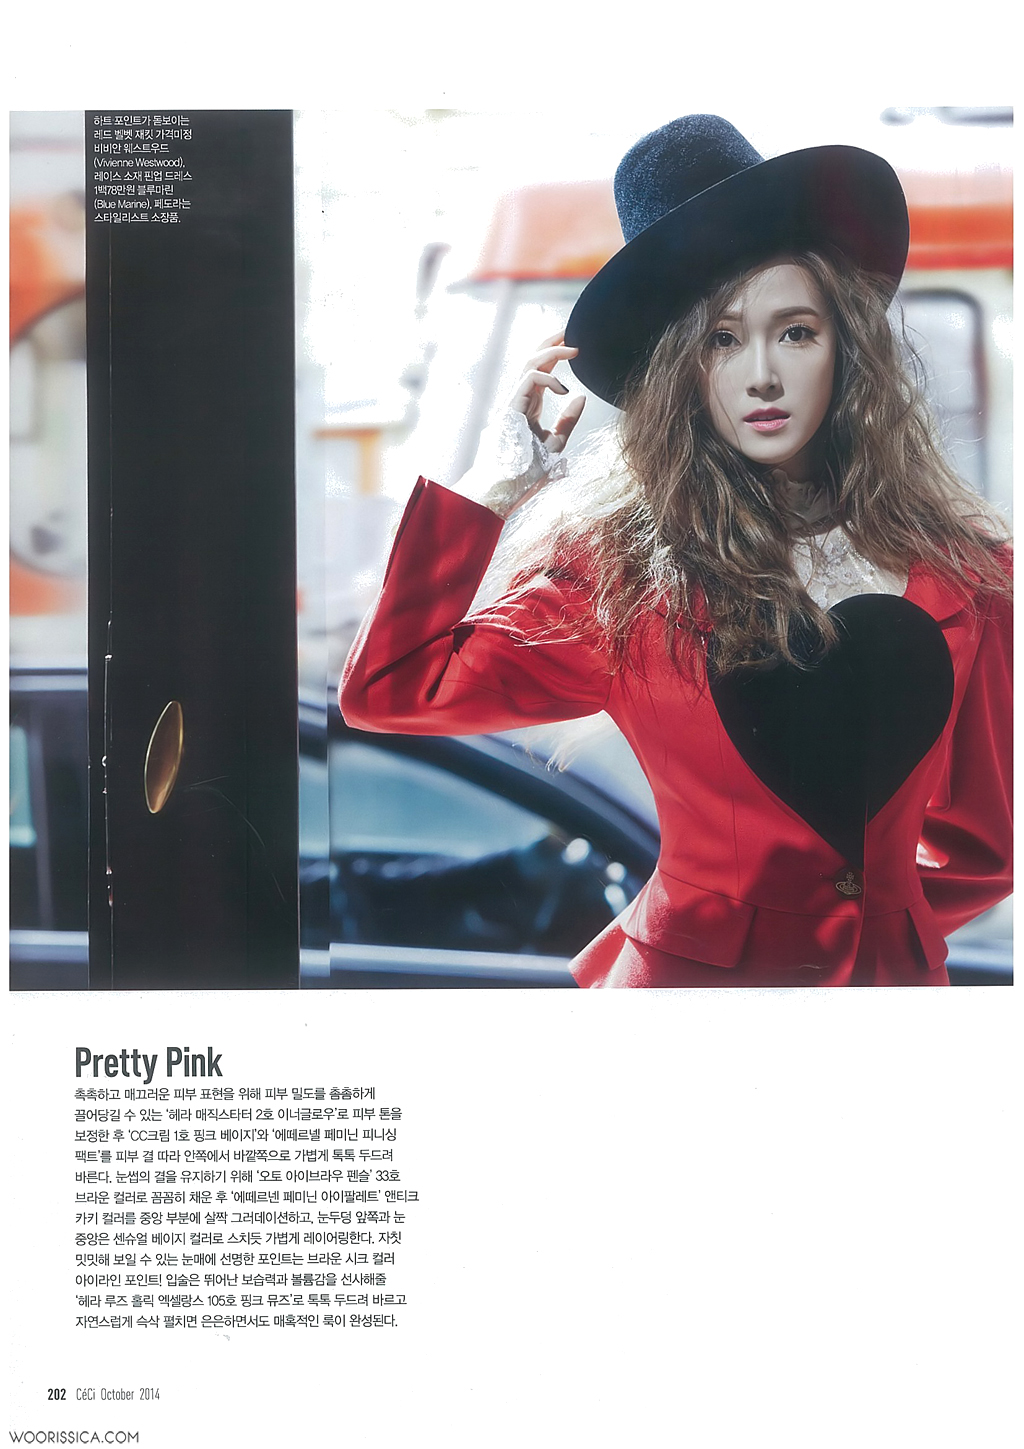 [PIC][17-09-2014]Jessica xuất hiện trên ấn phẩm tháng 10 của tạp chí "CECI" 22232034541AAC171151E5